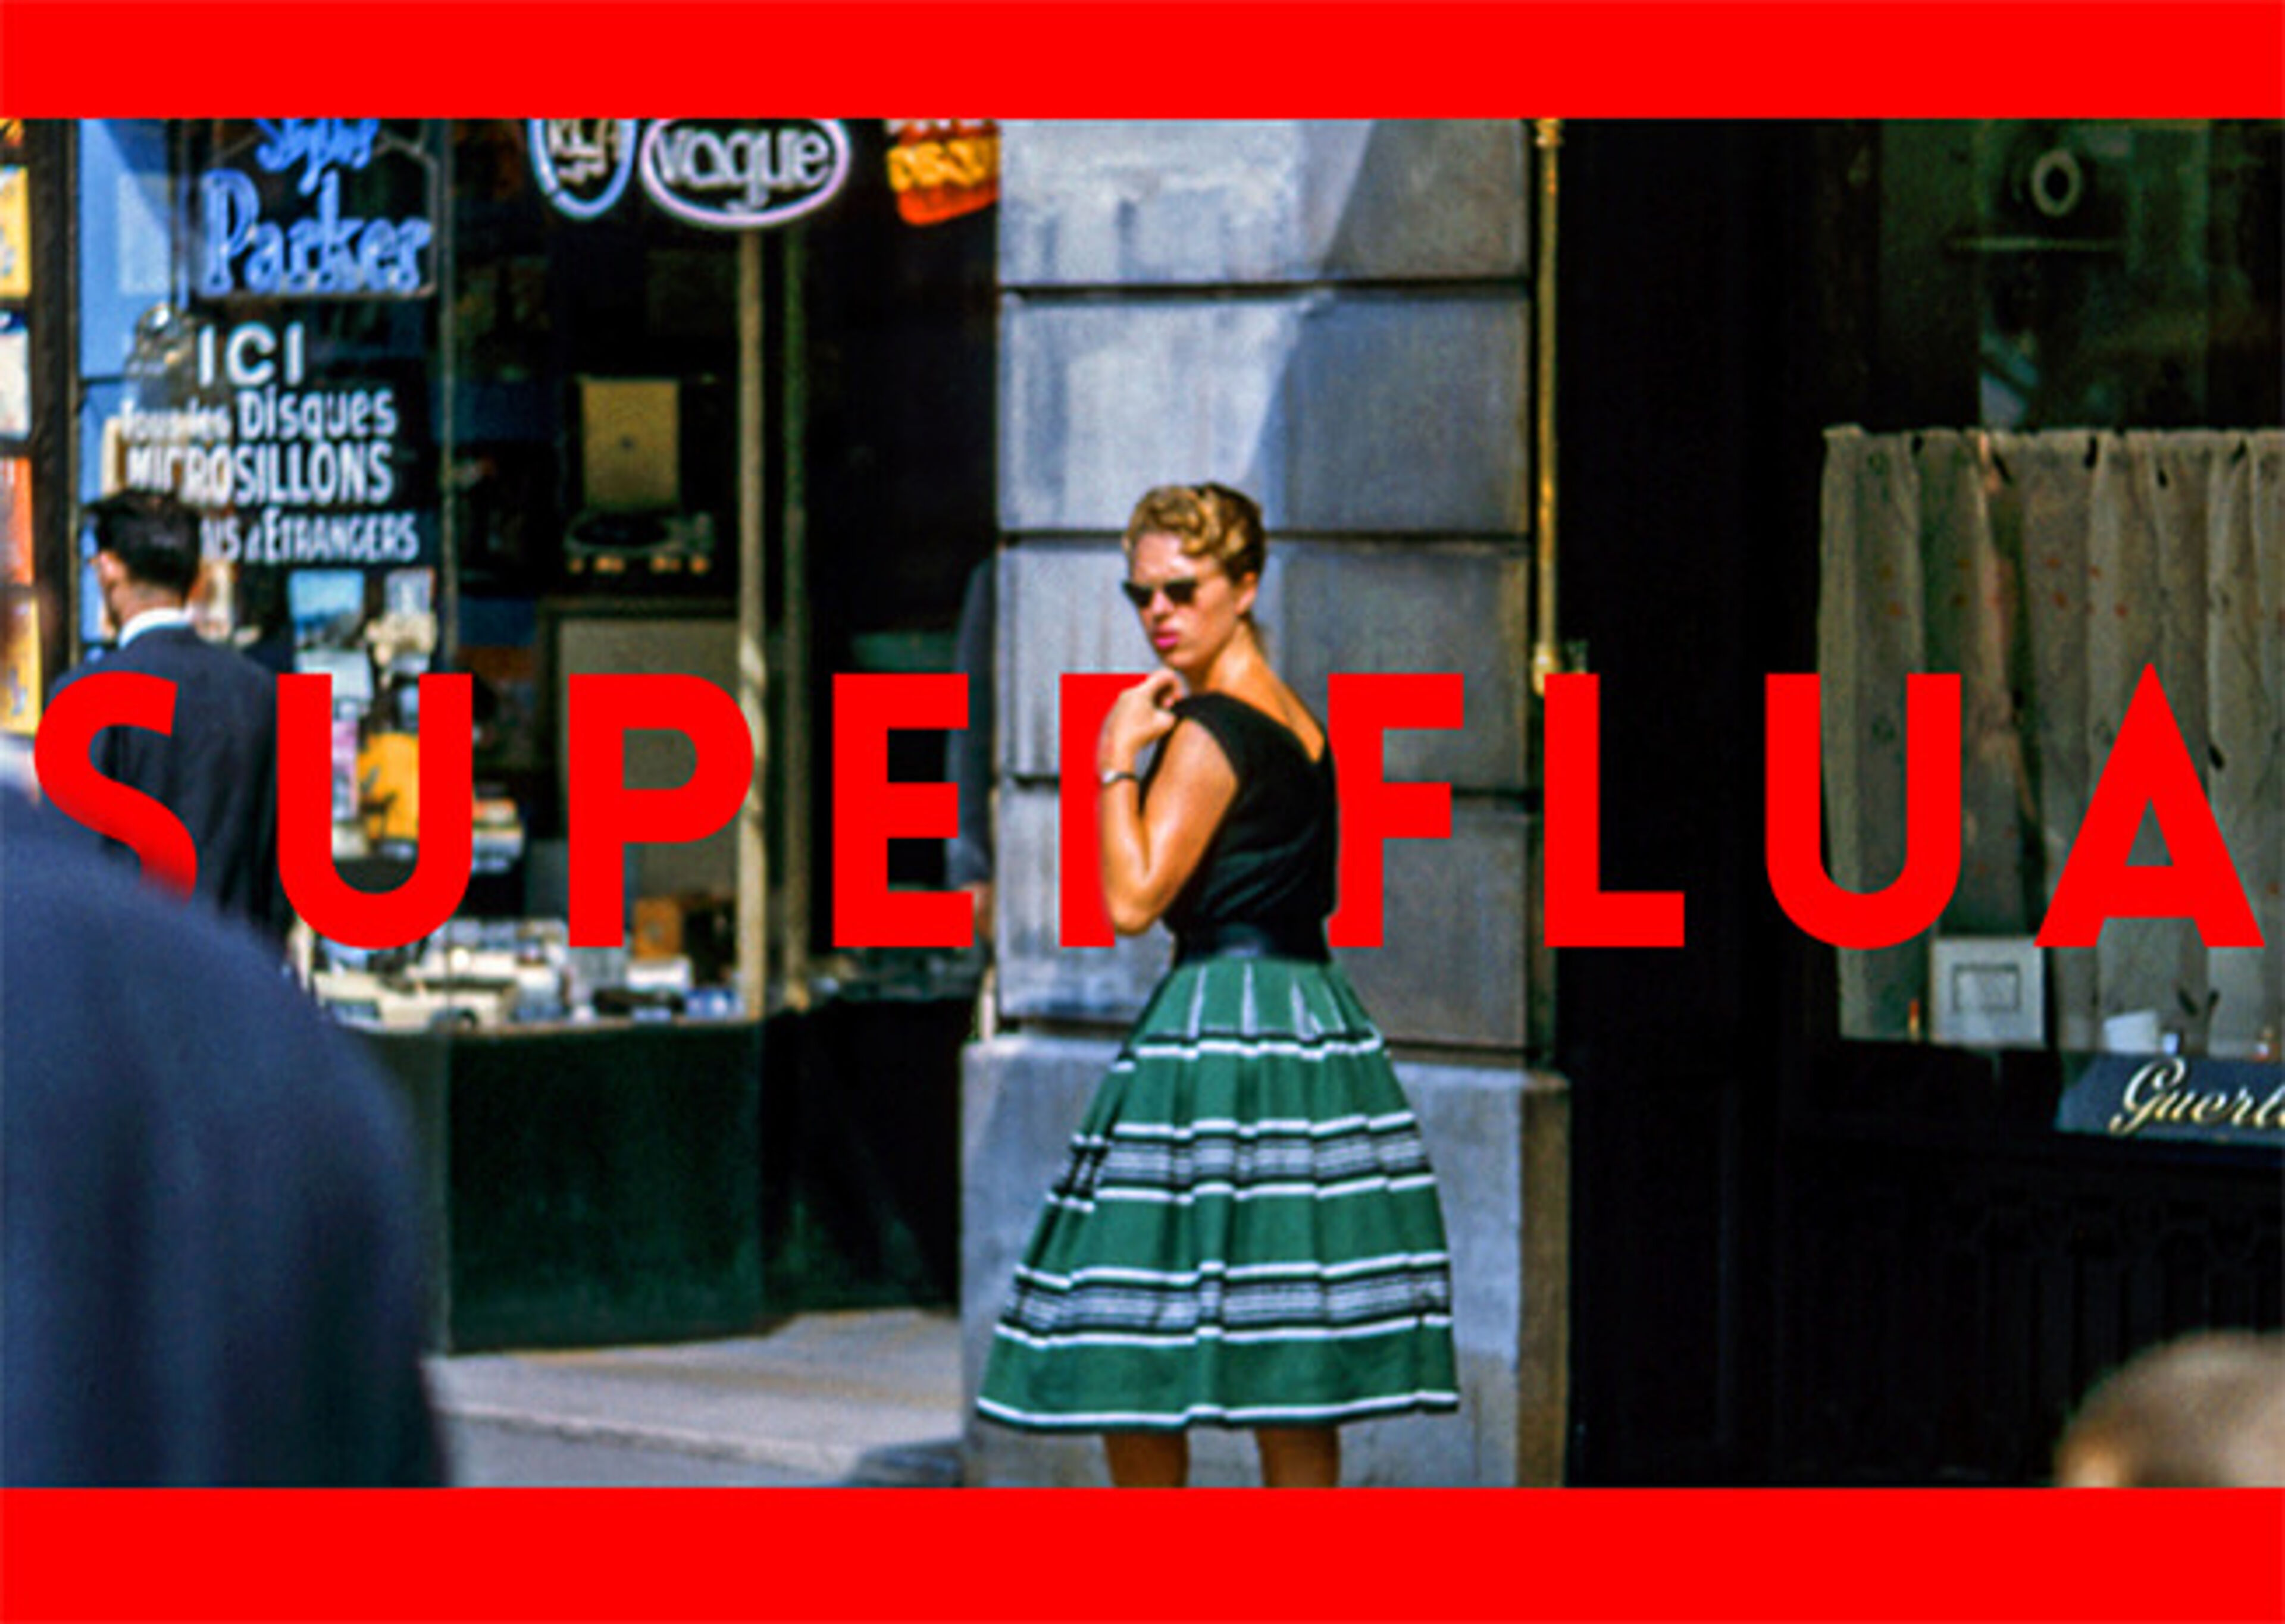 Una mujer con gafas de sol y falda de rayas está en una calle concurrida, con el texto en rojo y en negrita "SUPERFLUA" superpuesto.